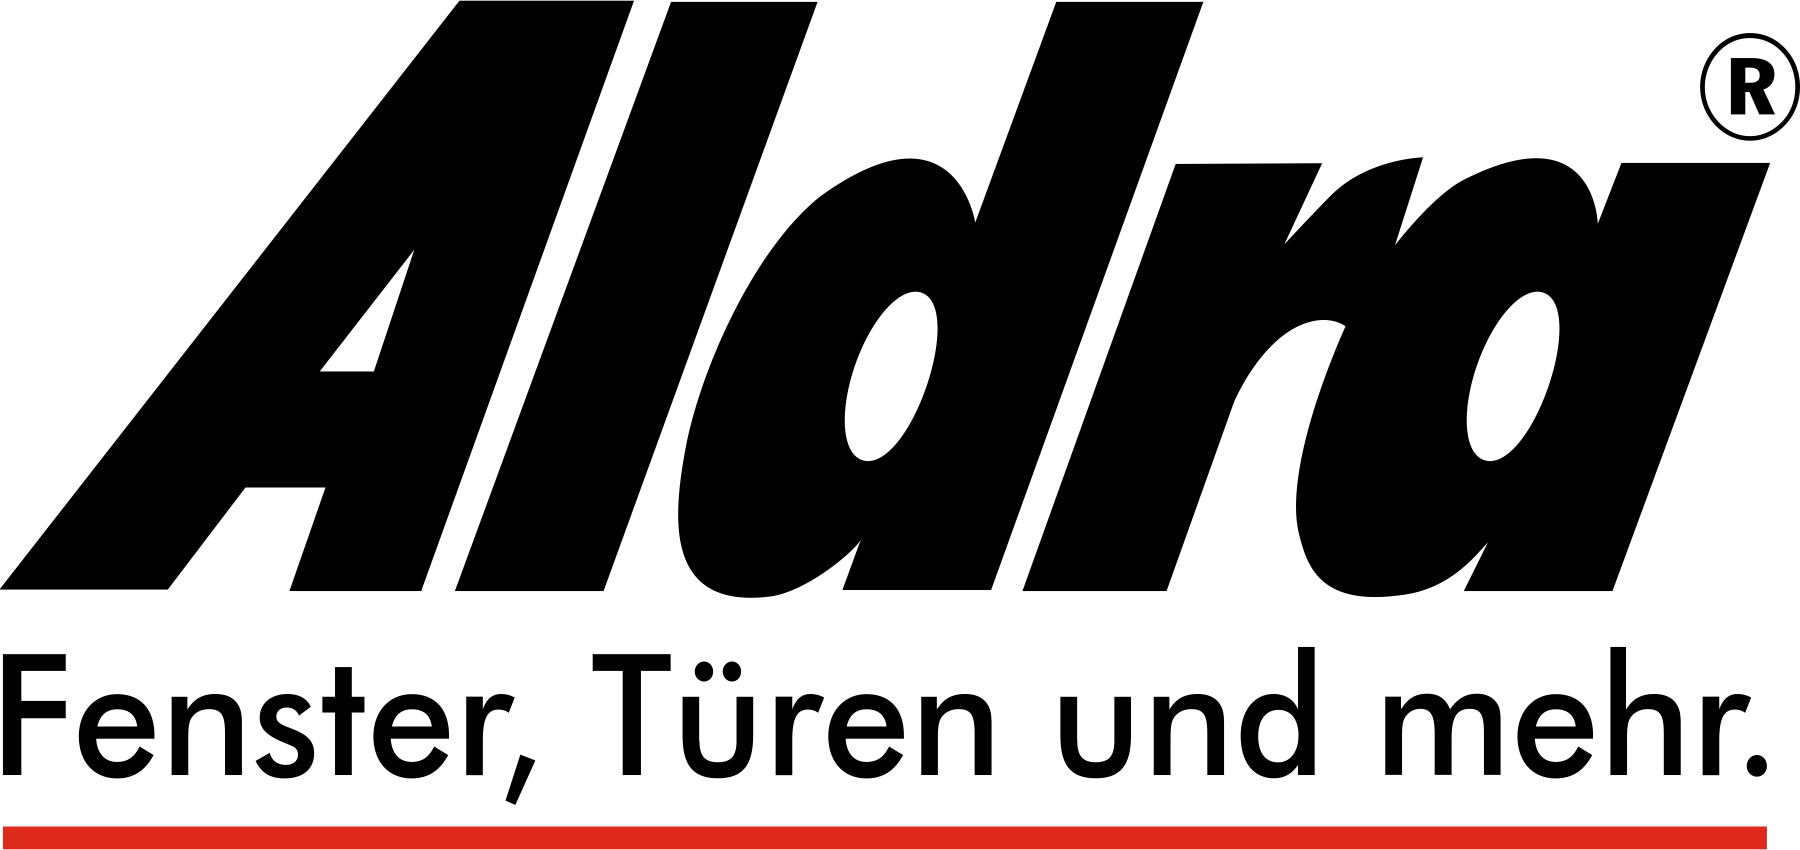 Das Aldra Logo in schwarzer Schrift und dem Slogan Fenster, Türen und mehr.